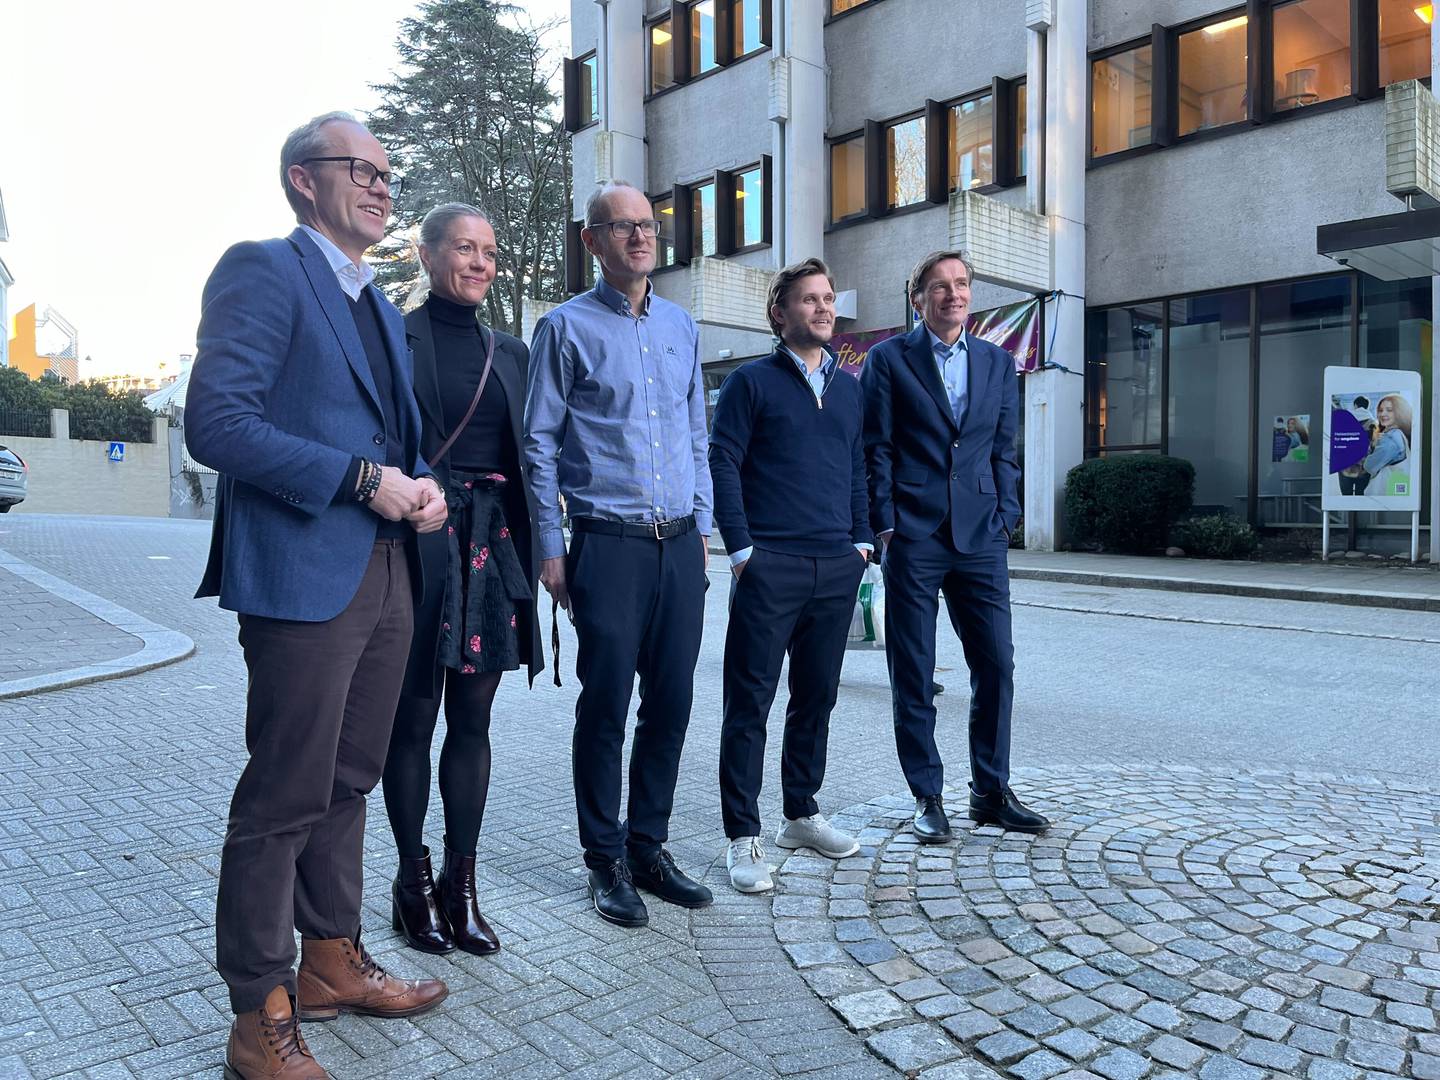 Fra venstre: Kyrre M. Knudsen, Beate Bredesen, Frank Harestad, Sondre Solvoll Bakketun og Robert Næss